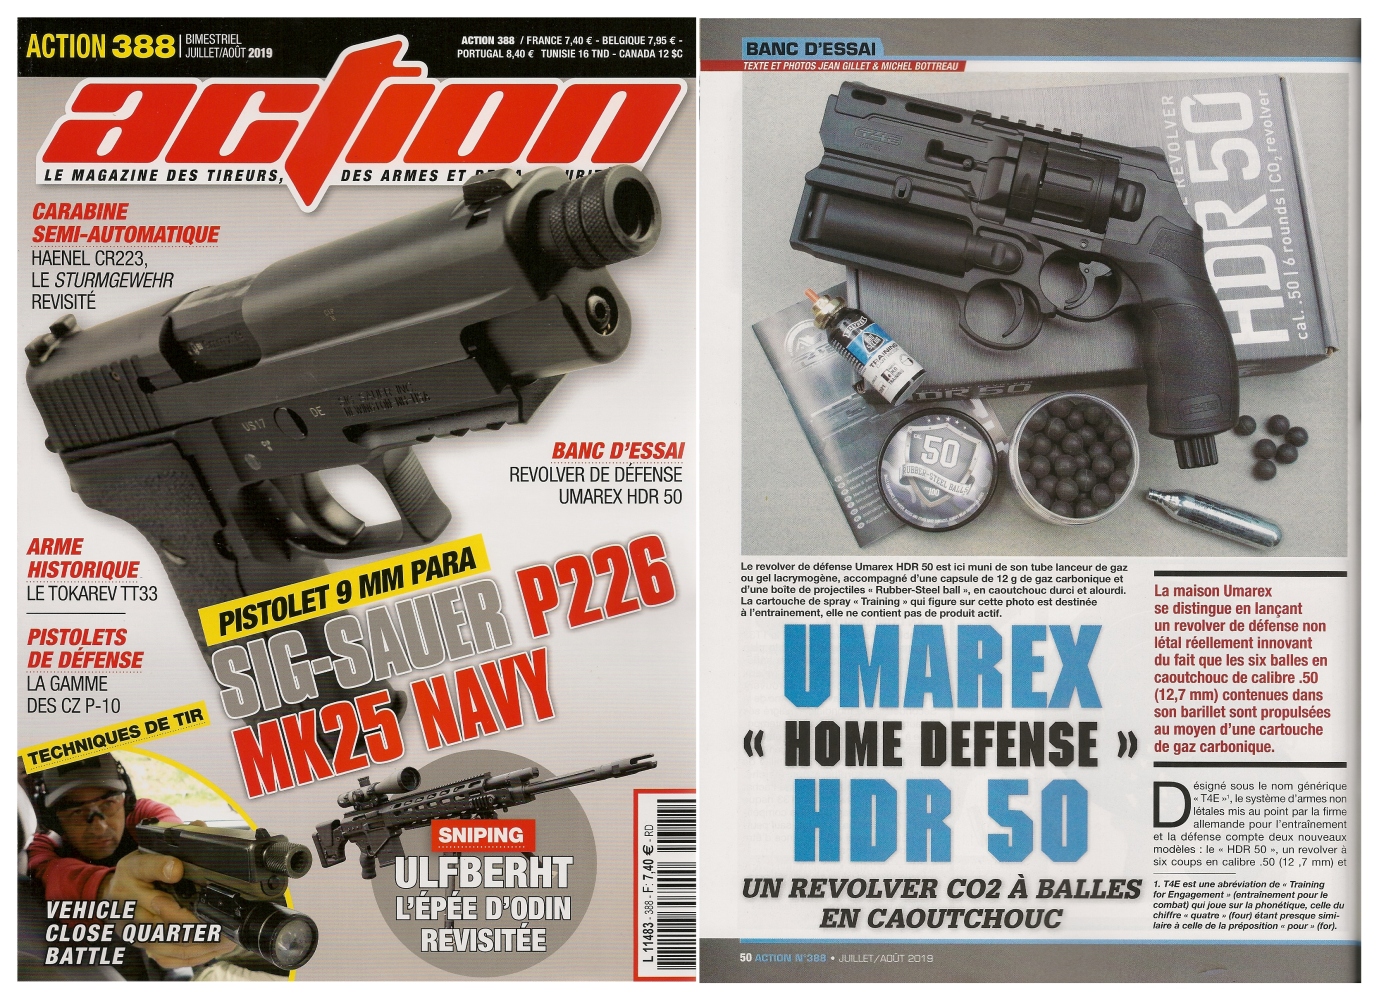 Le banc d’essai du revolver Umarex Home Defense HDR 50 a été publié sur 5 pages dans le magazine Action n°388 (juillet/août 2019).